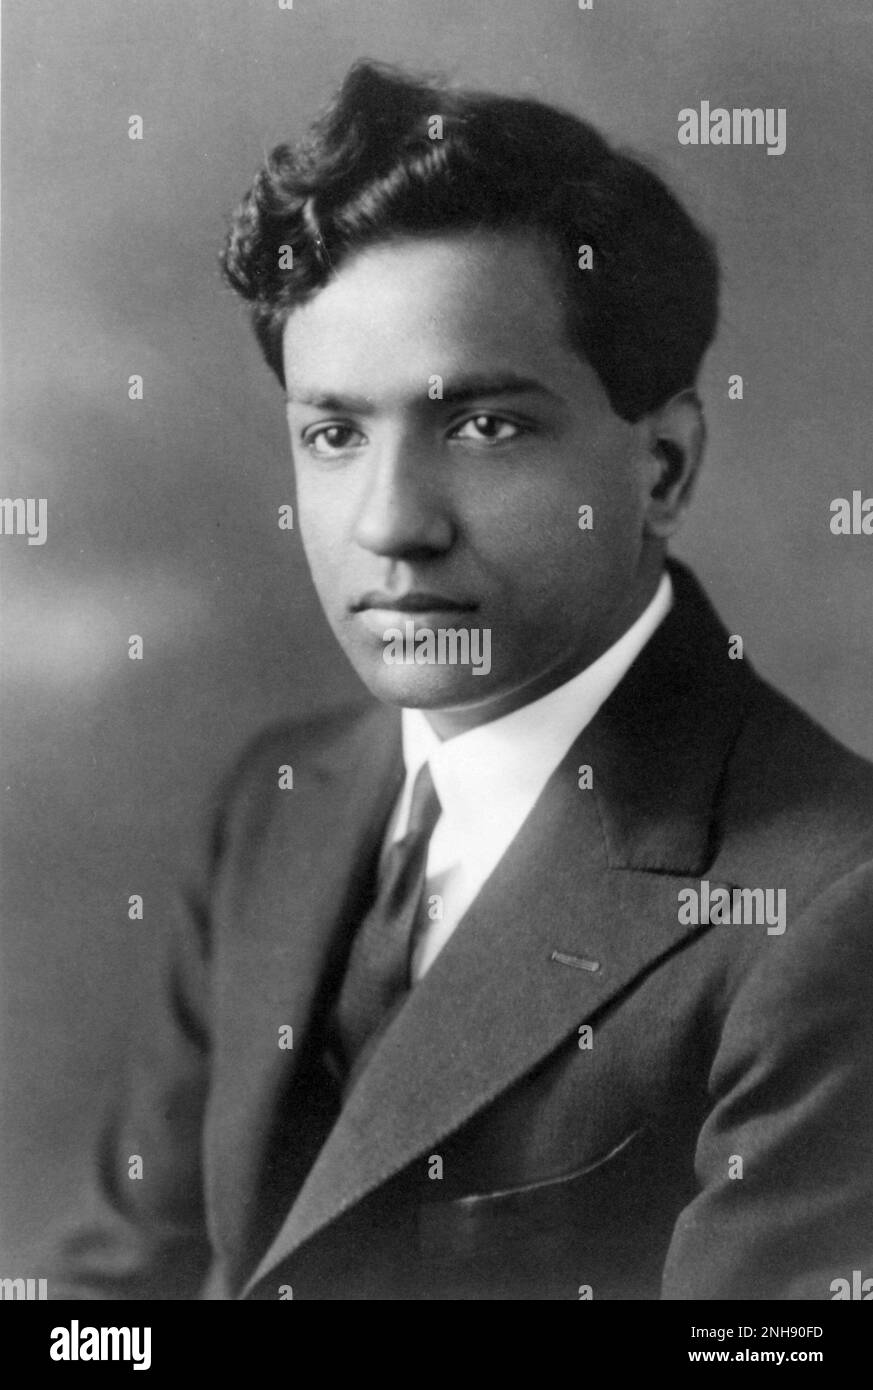 Porträt eines jungen Subrahmanyan Chandrasekhar als Fellow des Trinity College, Cambridge, 1934. Subrahmanyan Chandrasekhar (1910-1995) war ein indisch-amerikanischer Astrophysiker, der sein Berufsleben in den Vereinigten Staaten verbrachte. Er teilte den Nobelpreis für Physik 1983 mit William A. Fowler. Stockfoto